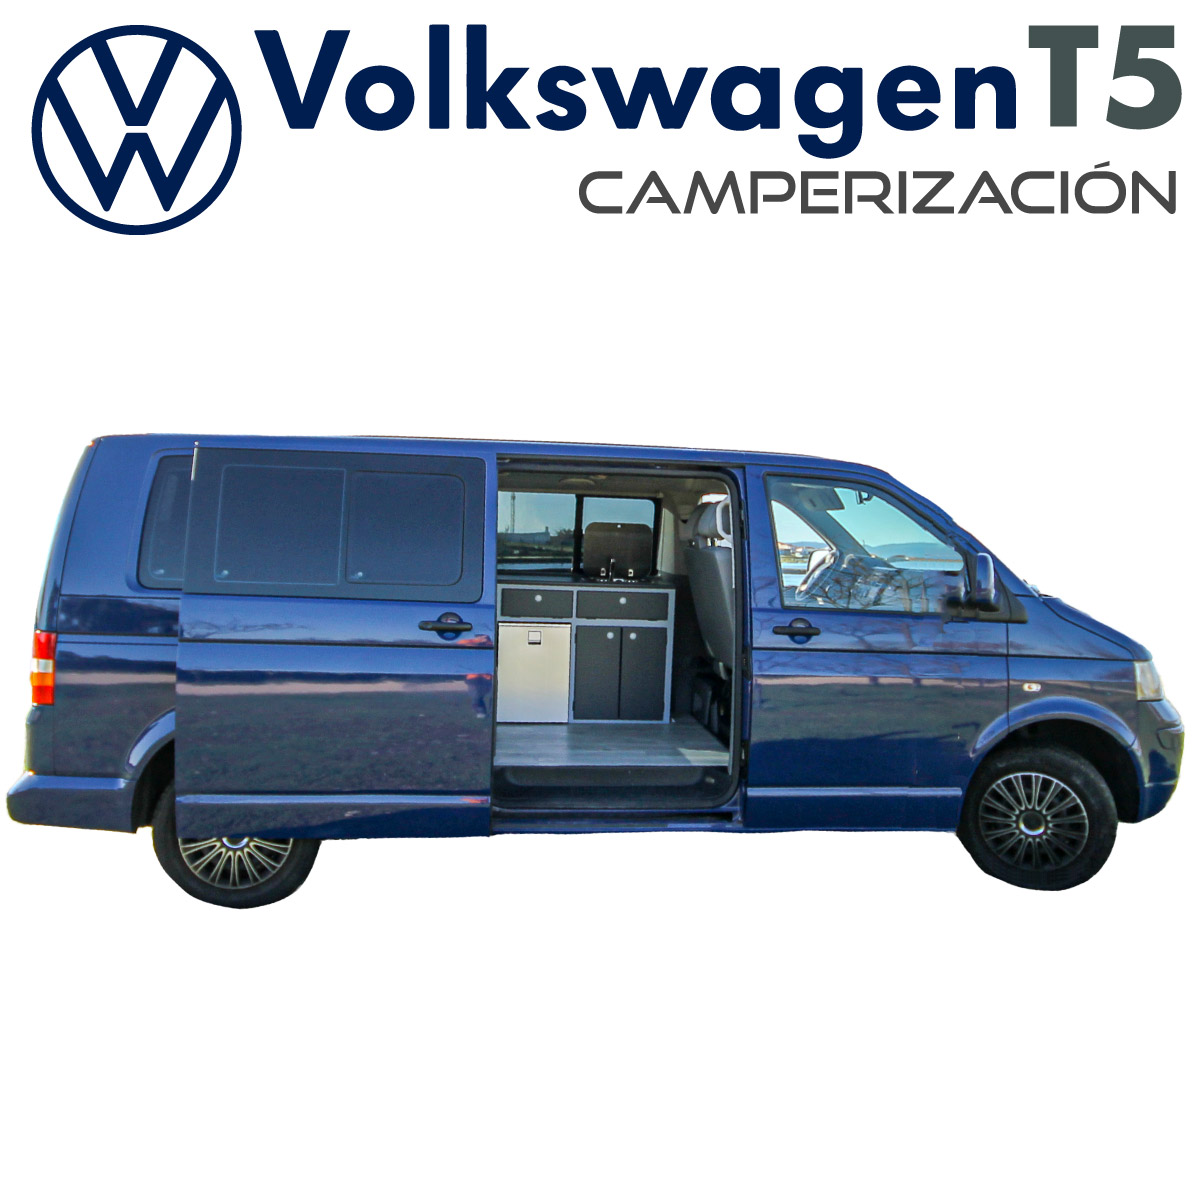 Volkswagen T5 Larga Camperizada portada